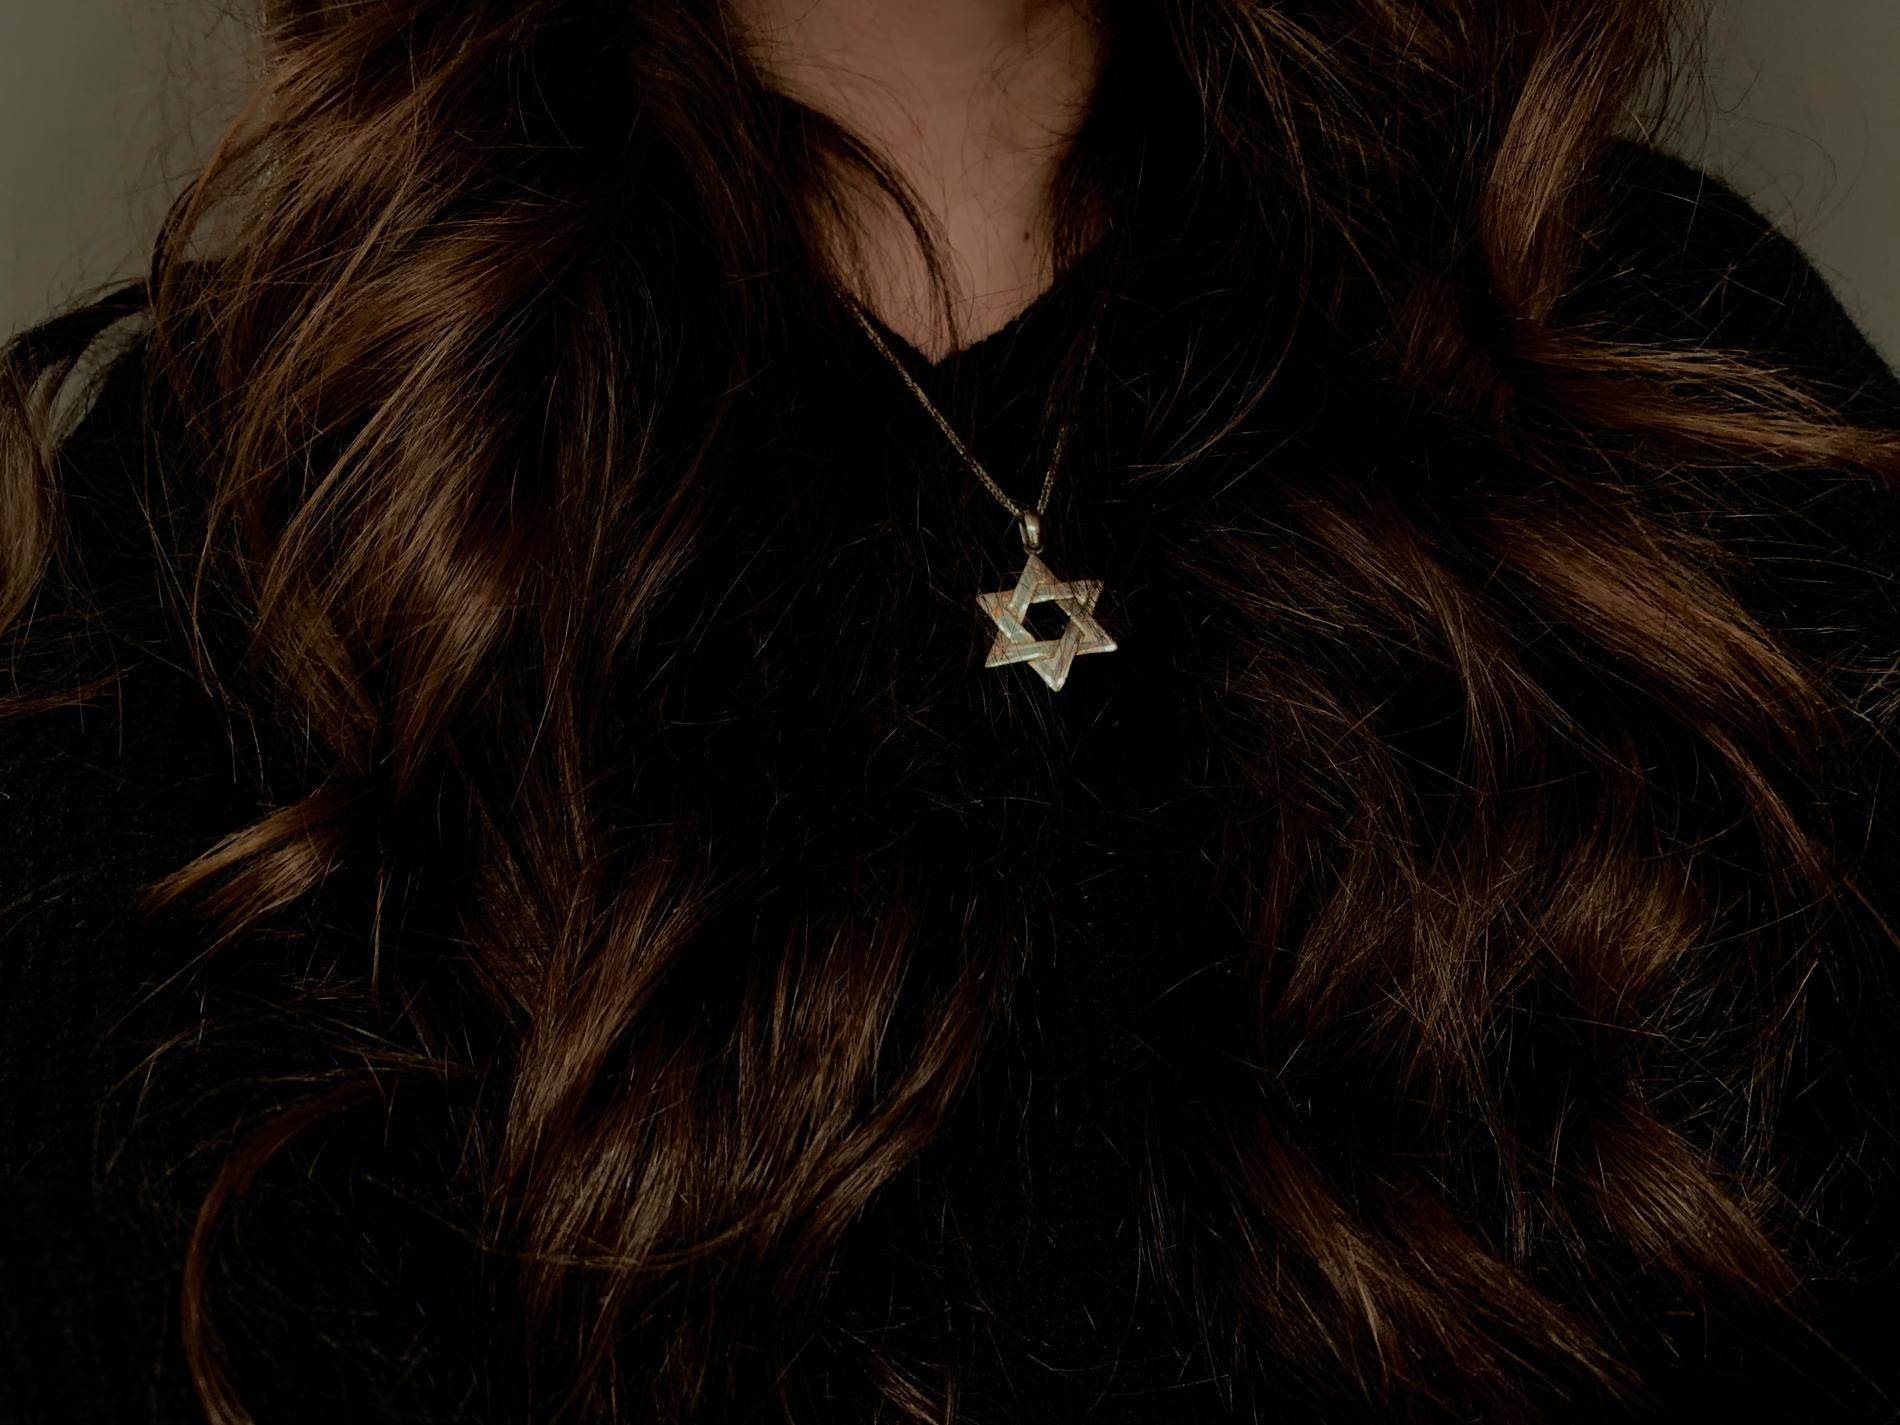 ”Sara” vågar inte längre bära sitt halsband med  davidsstjärnan.